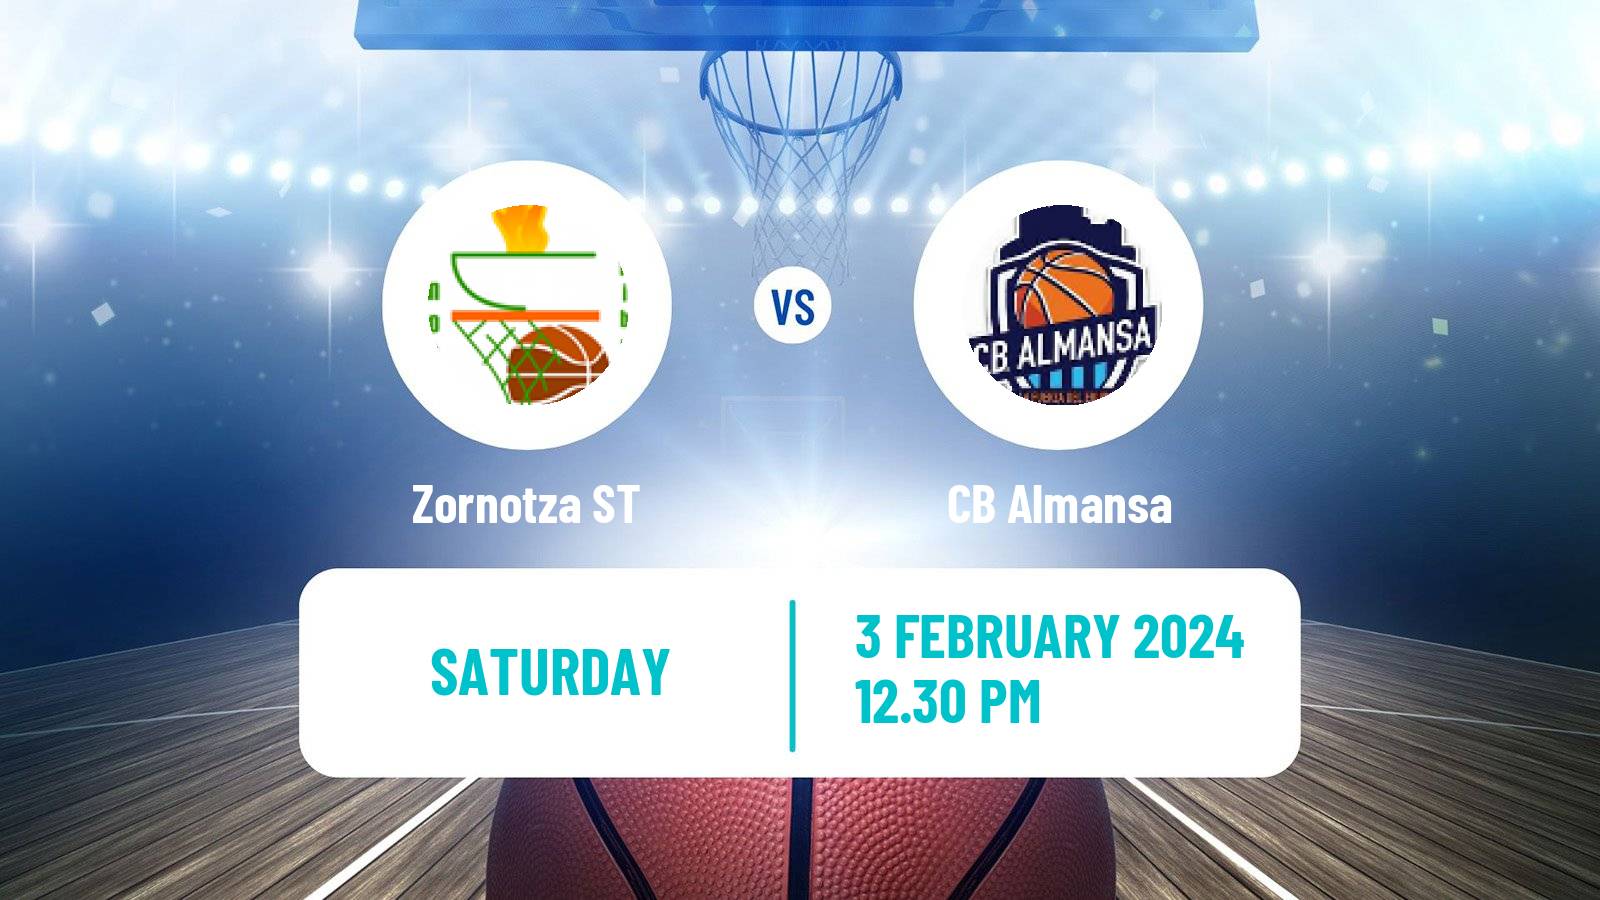 Basketball Spanish LEB Plata Zornotza ST - Almansa